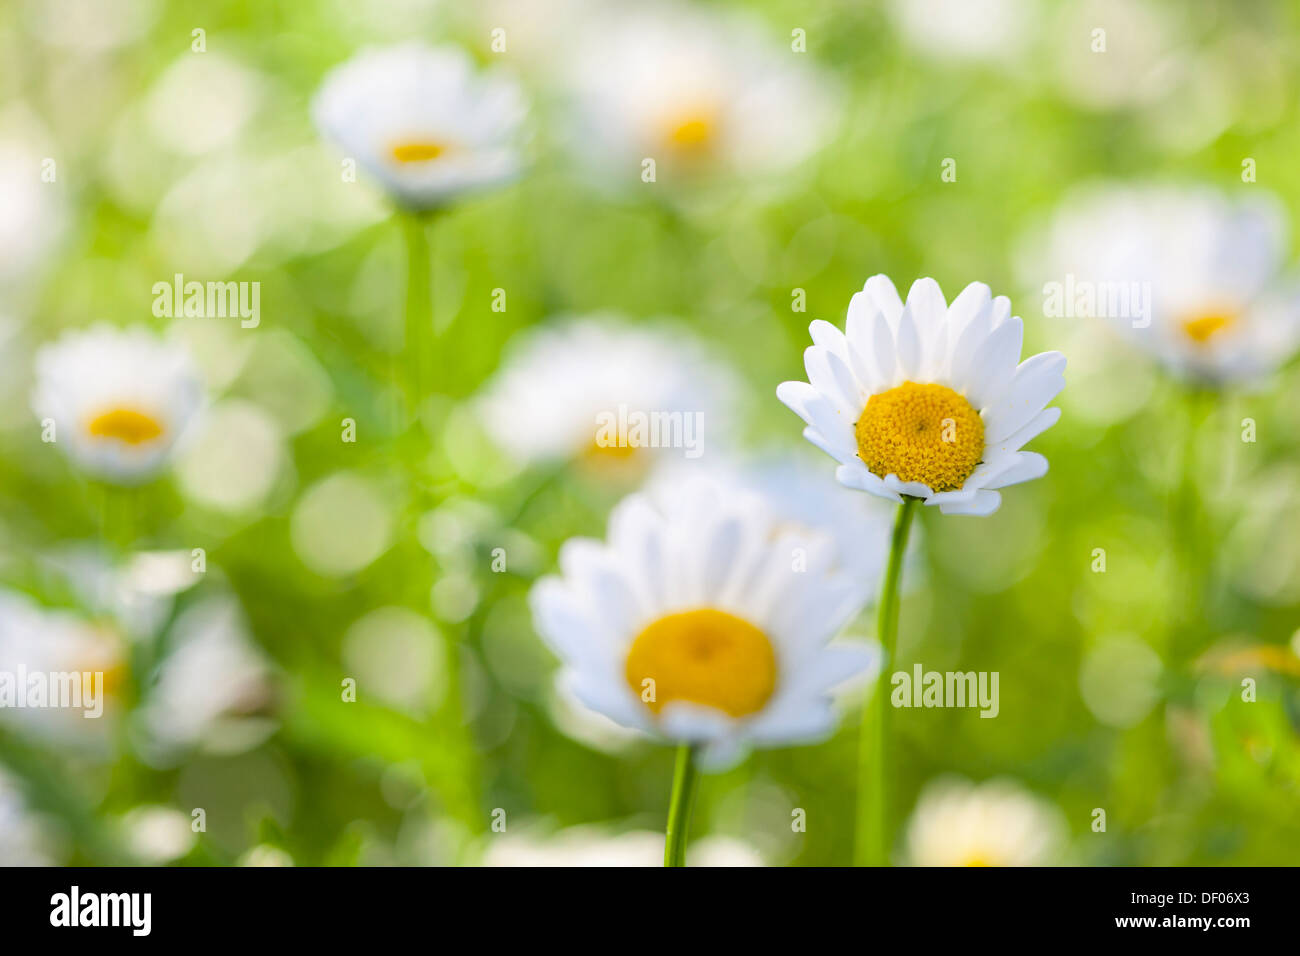 Nahaufnahme der ein Gänseblümchen in einem Feld von Blumen mit sehr geringen Schärfentiefe. Stockfoto